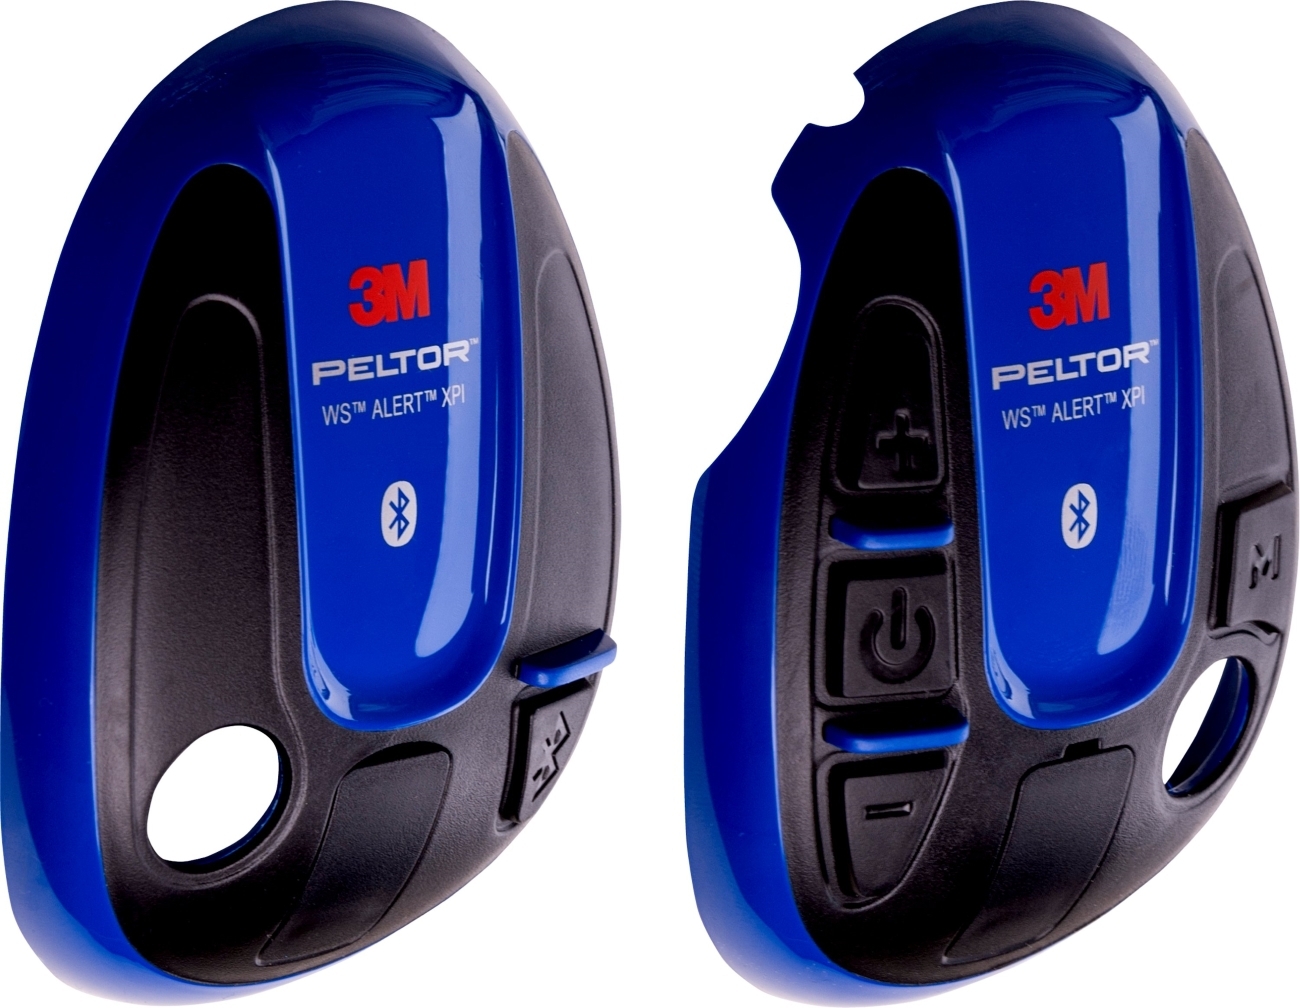 3M PELTOR beschermhoes voor WS ALERT headsets, blauw, 1 paar (links rechts), 210300-664-BA/1